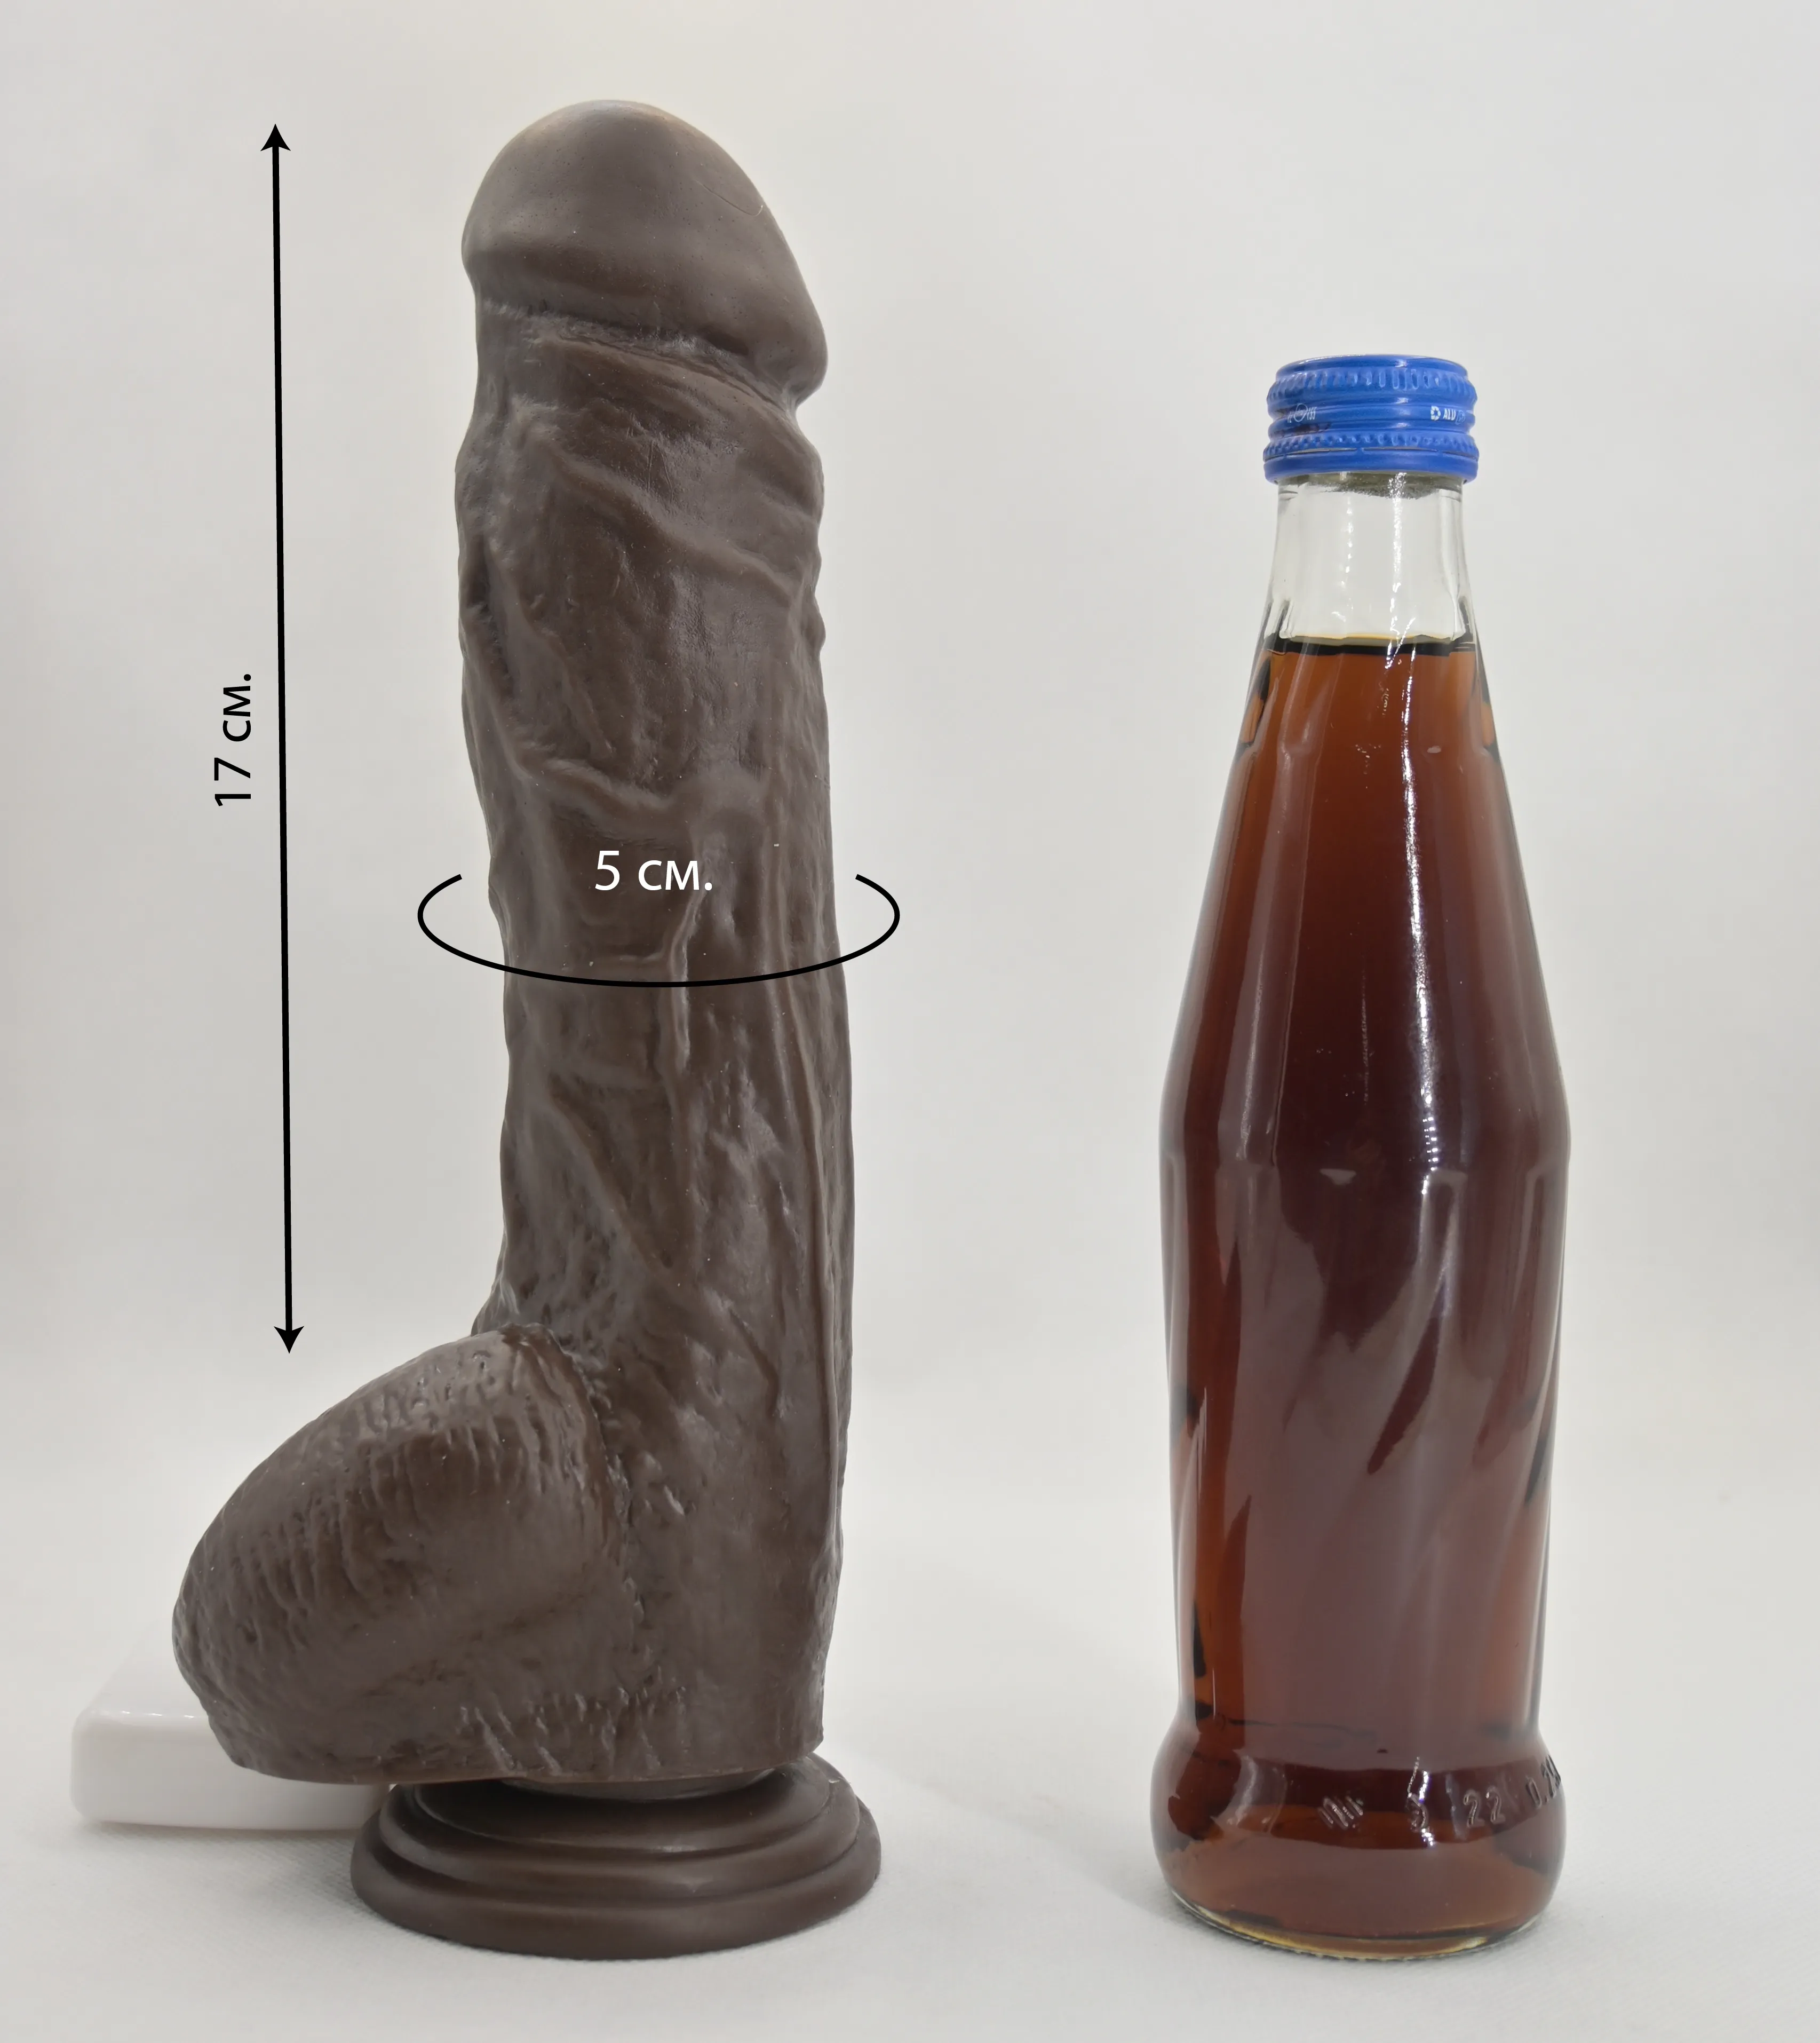 Размеры и сравнение дилдо с бутылкой газировки 0,33 л.